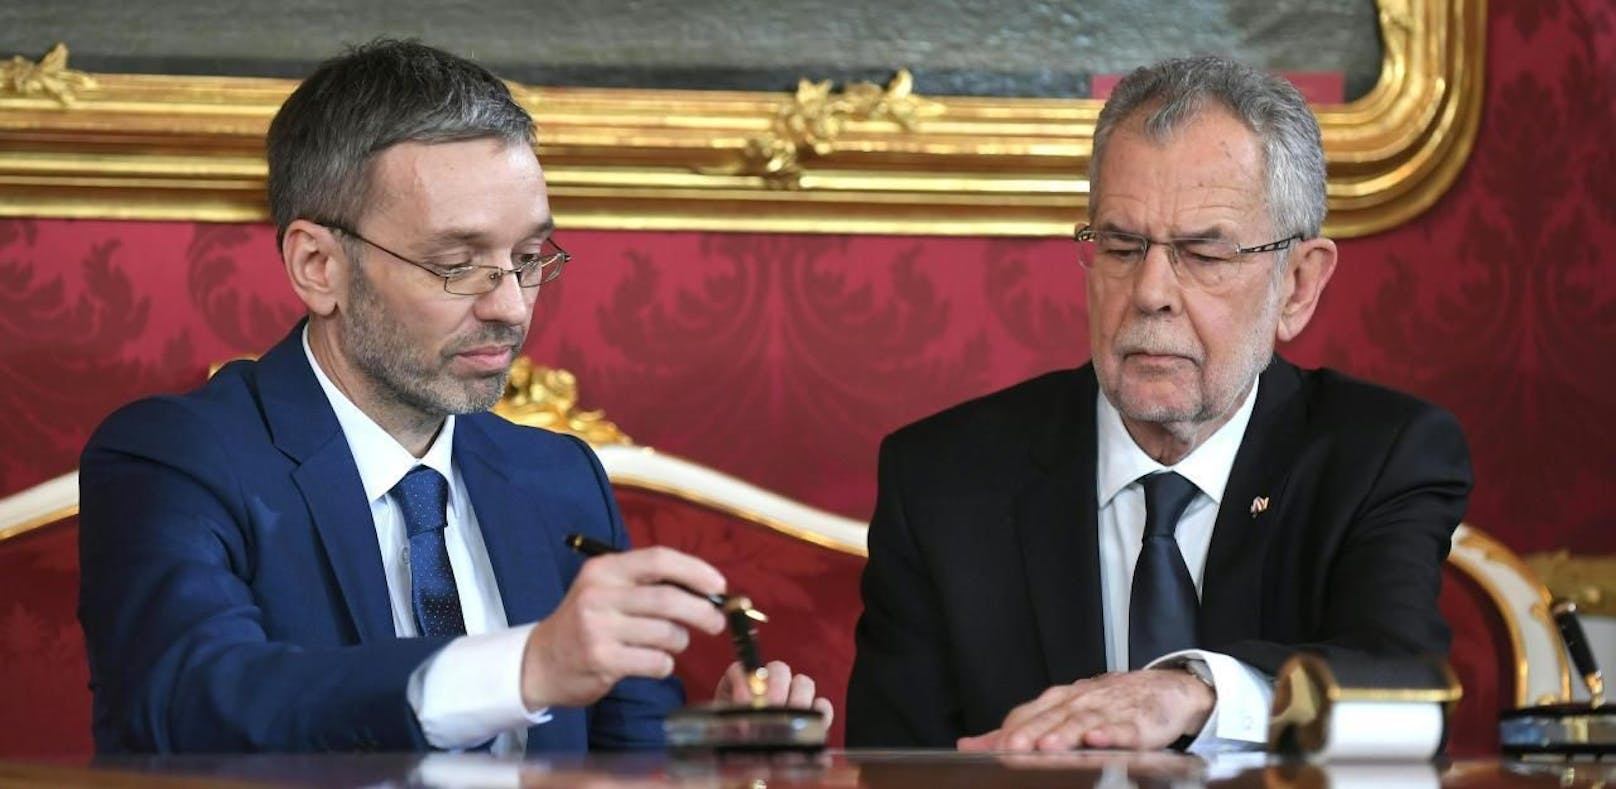 FPÖ-Klubobmann Herbert Kickl (im Bild links) übt heftige Kritik an der &quot;parteipolitisch motivierten Vorgehensweise des Bundespräsidenten&quot; Alexander Van der Bellen